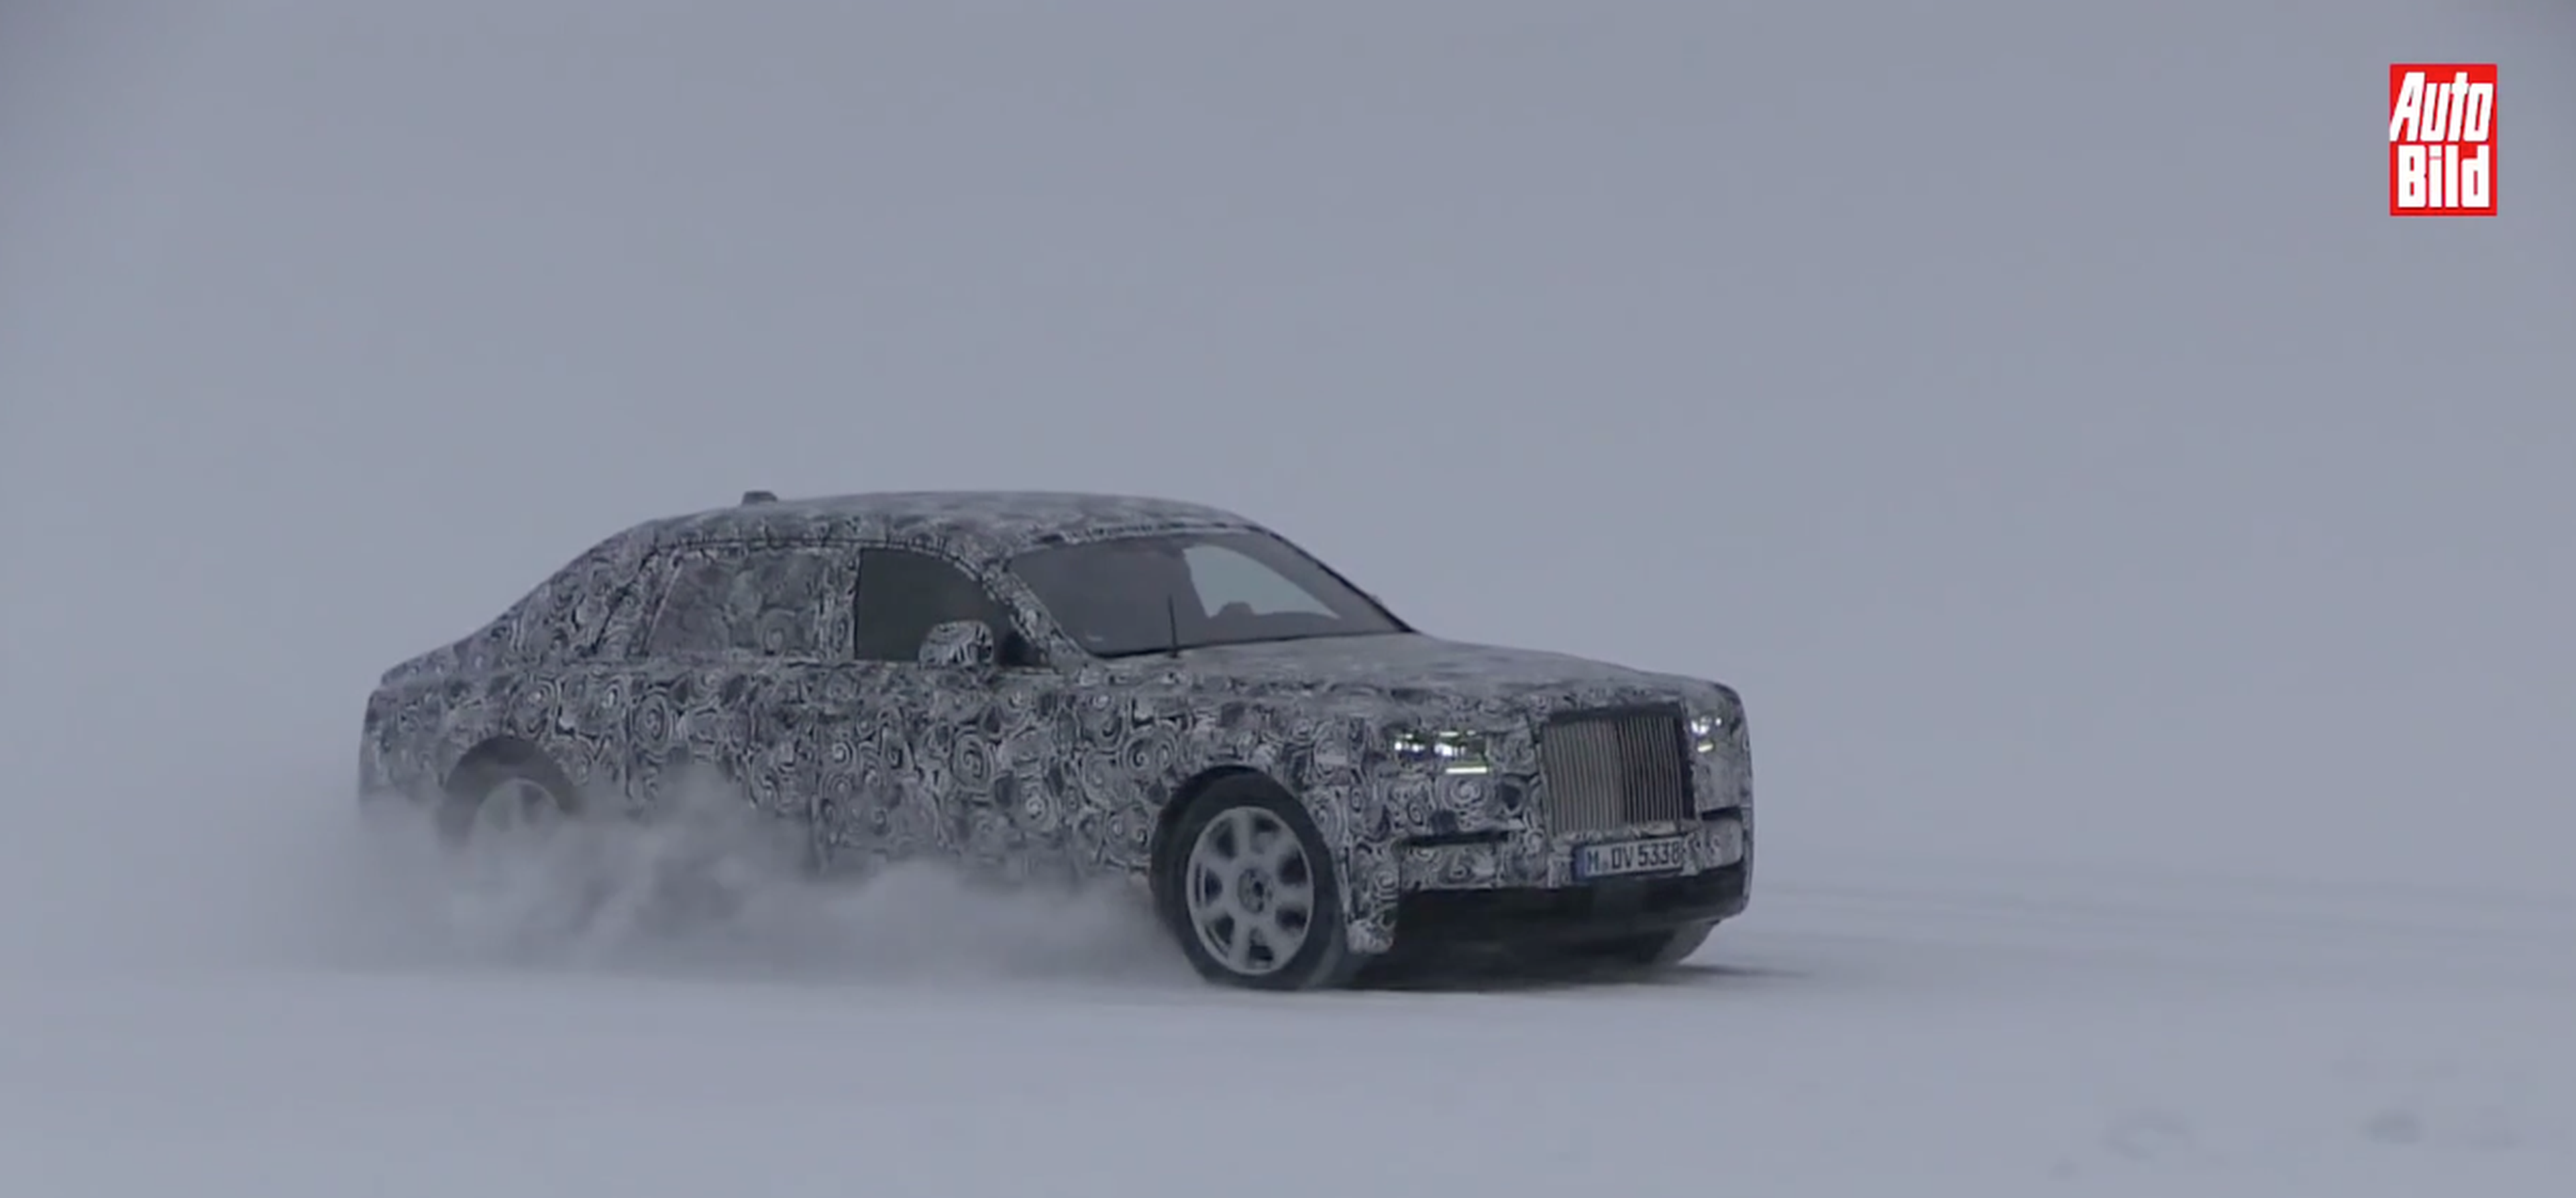 VÍDEO: Rolls-Royce Phantom 2018, ¡ya está en la rampa de salida!